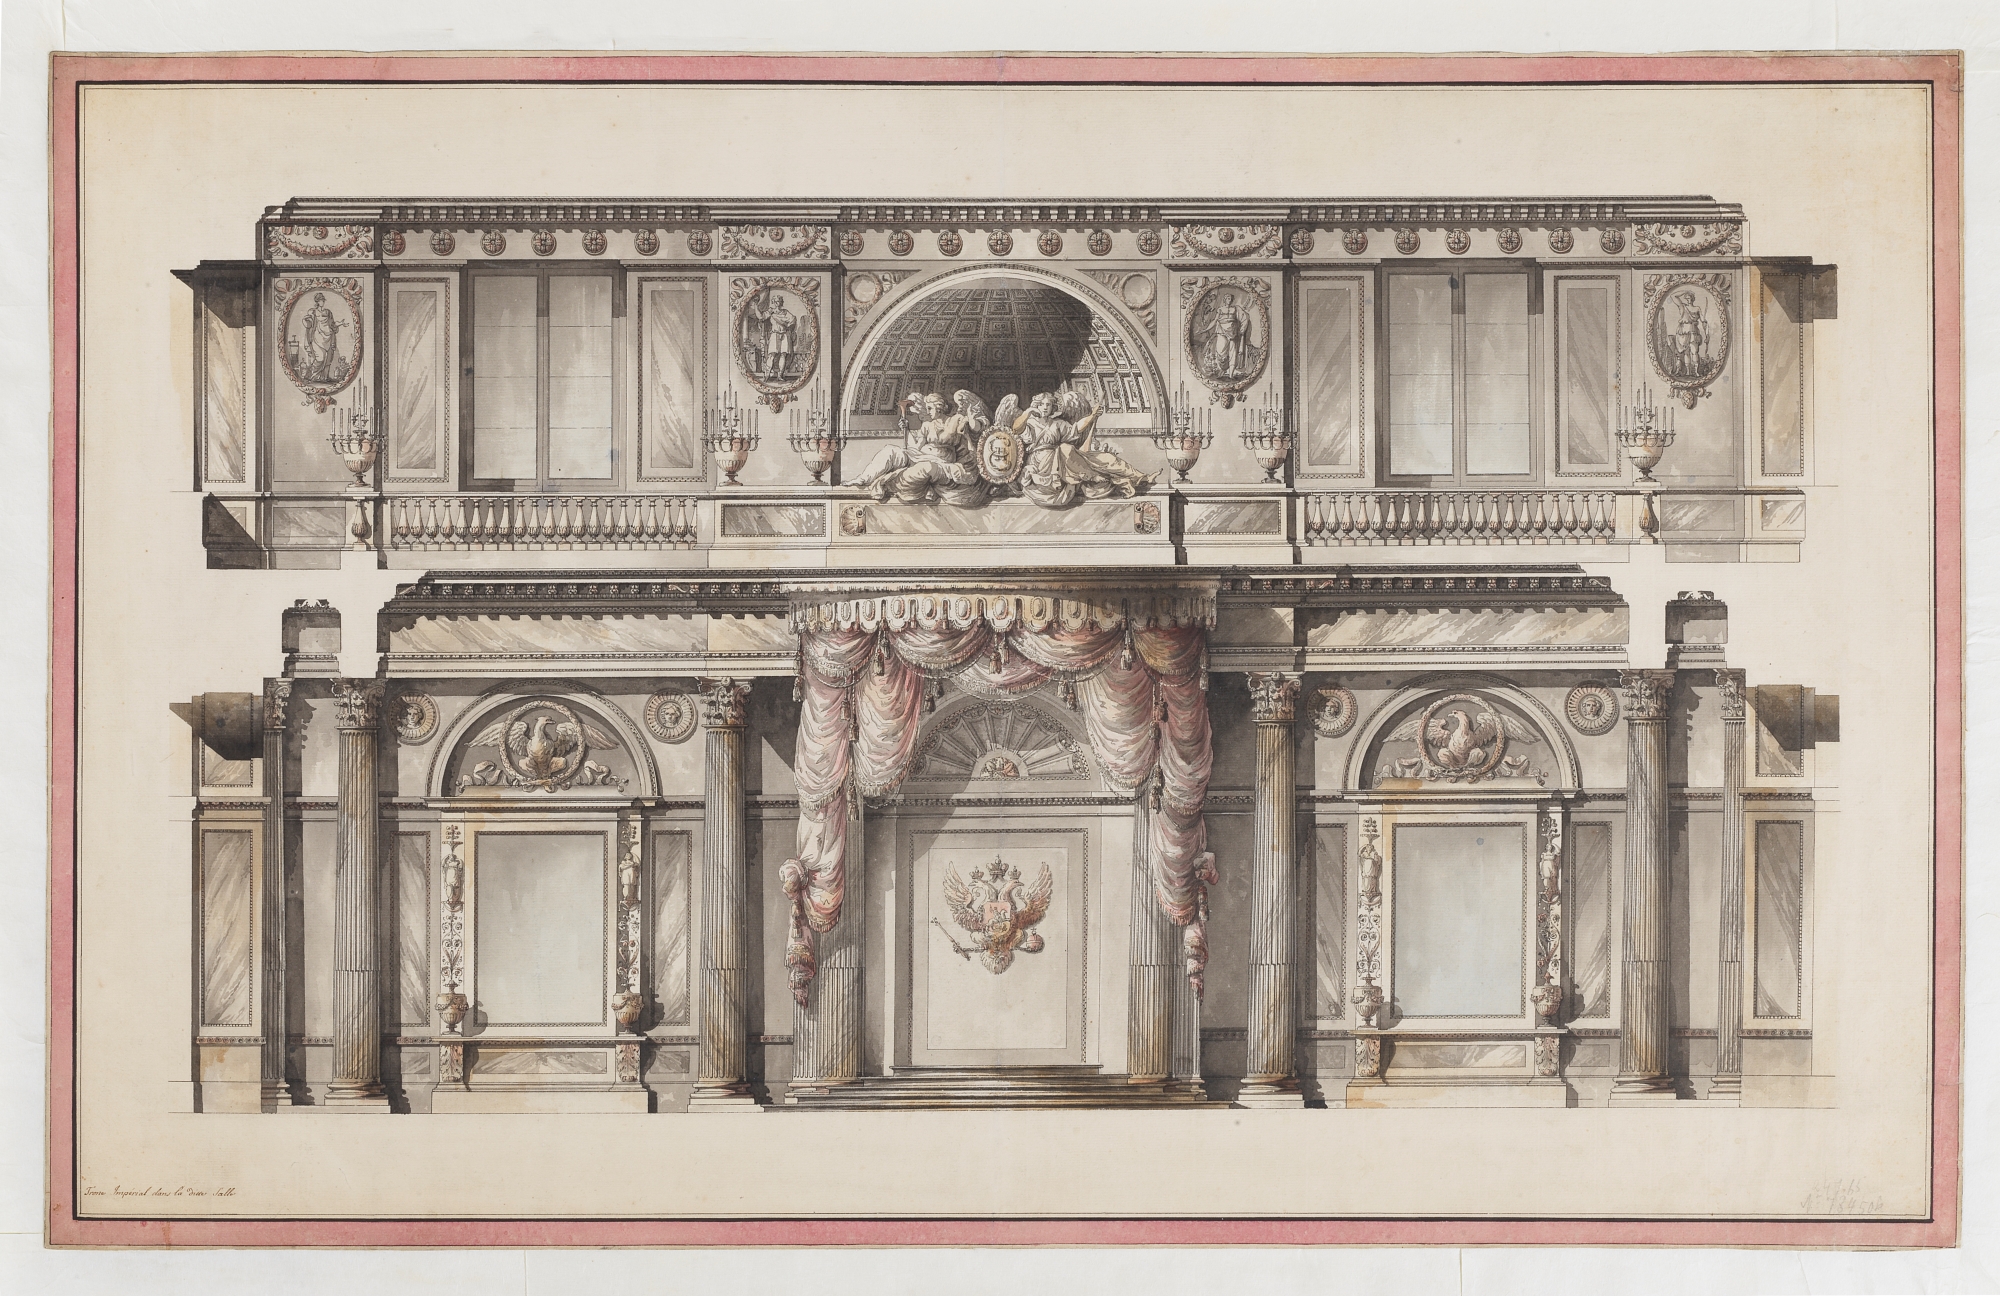 Giacomo Quarenghi (1744-1817), Salle du trône du Palais d’Hiver de Saint-Pétersbourg. Plume, crayon et aquarelle sur papier, 55,5 × 89,2 cm. Carlo Virgilio & Co., Rome.